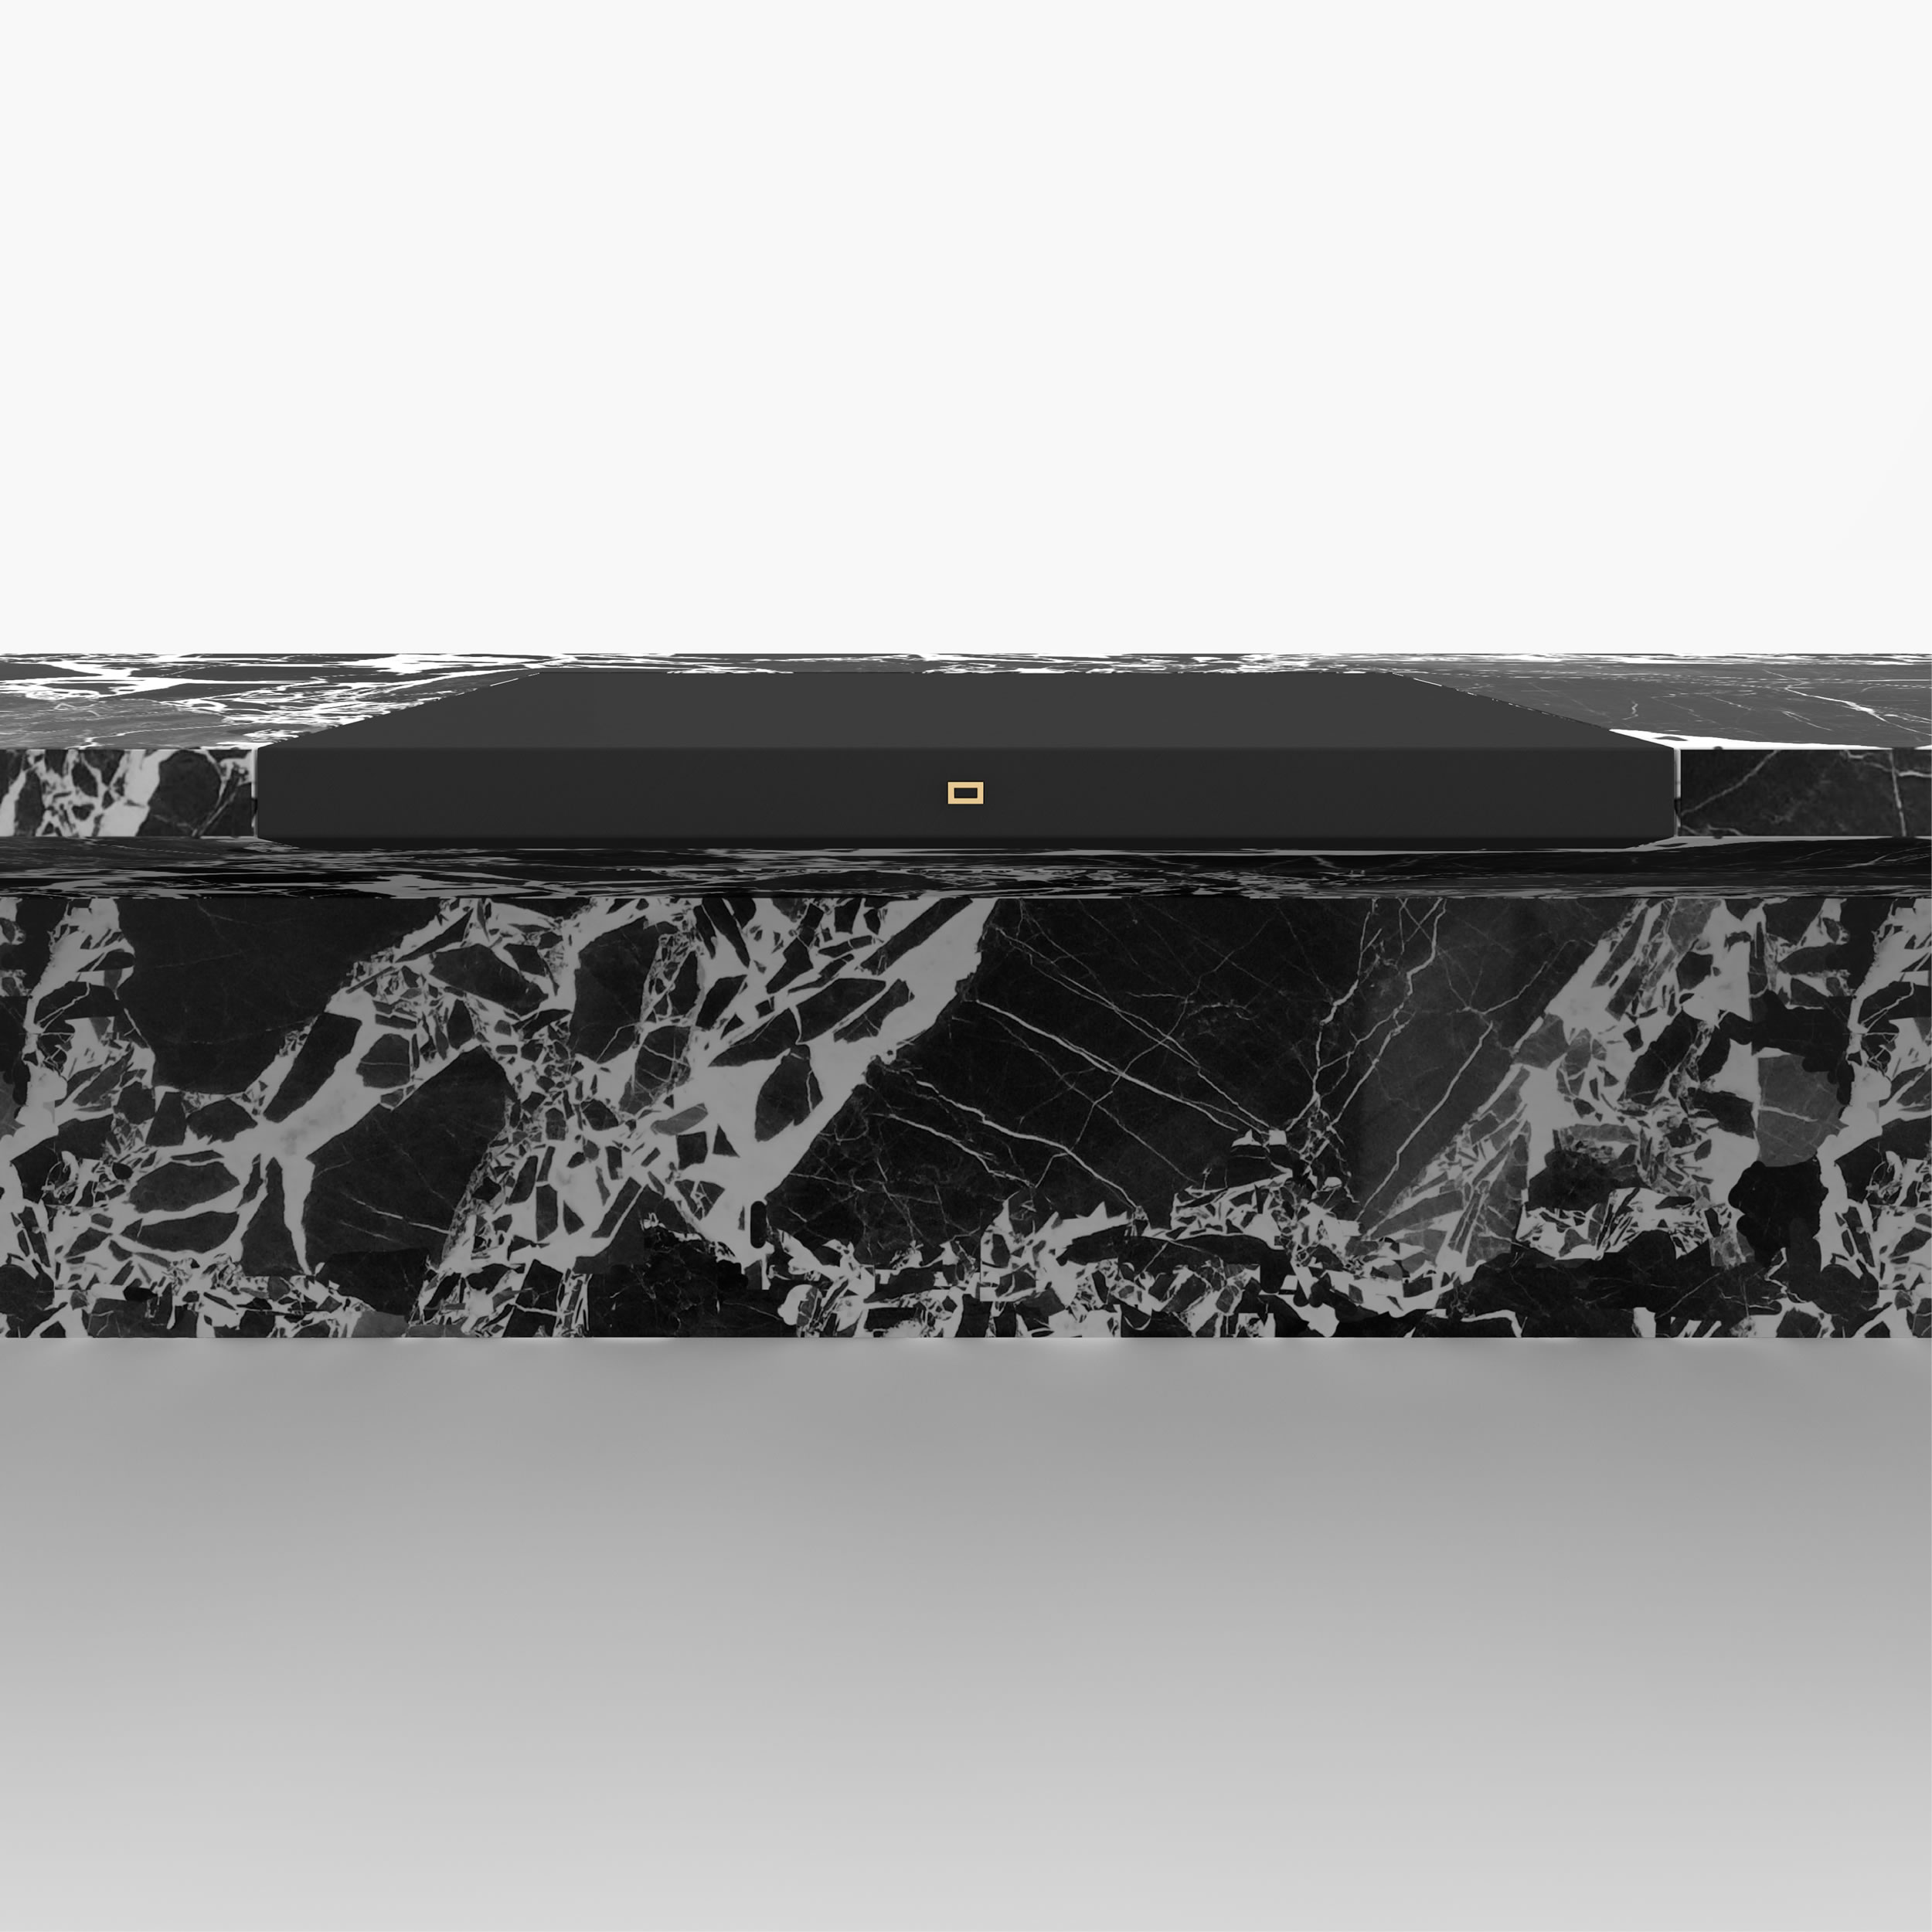 Schreibtisch gross mit ausziehbarer schreibauflage Weiss Grand Antique Marmor einzigartig geformt Chefzimmer Buero Innenarchitektur Schreibtische FS 417 FELIX SCHWAKE